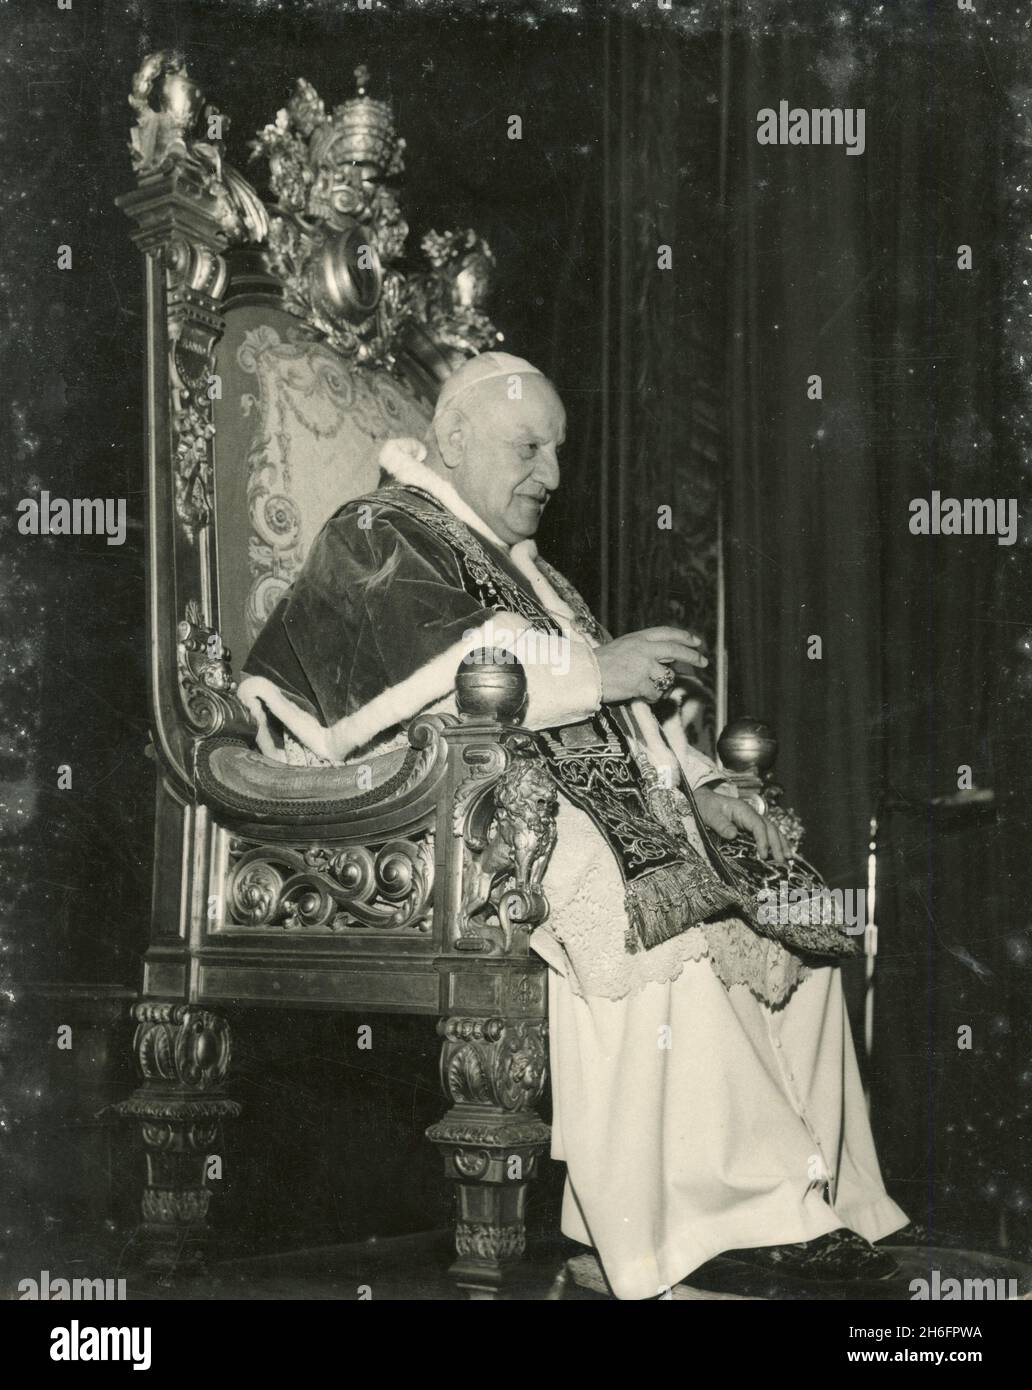 Sedia papale immagini e fotografie stock ad alta risoluzione - Alamy